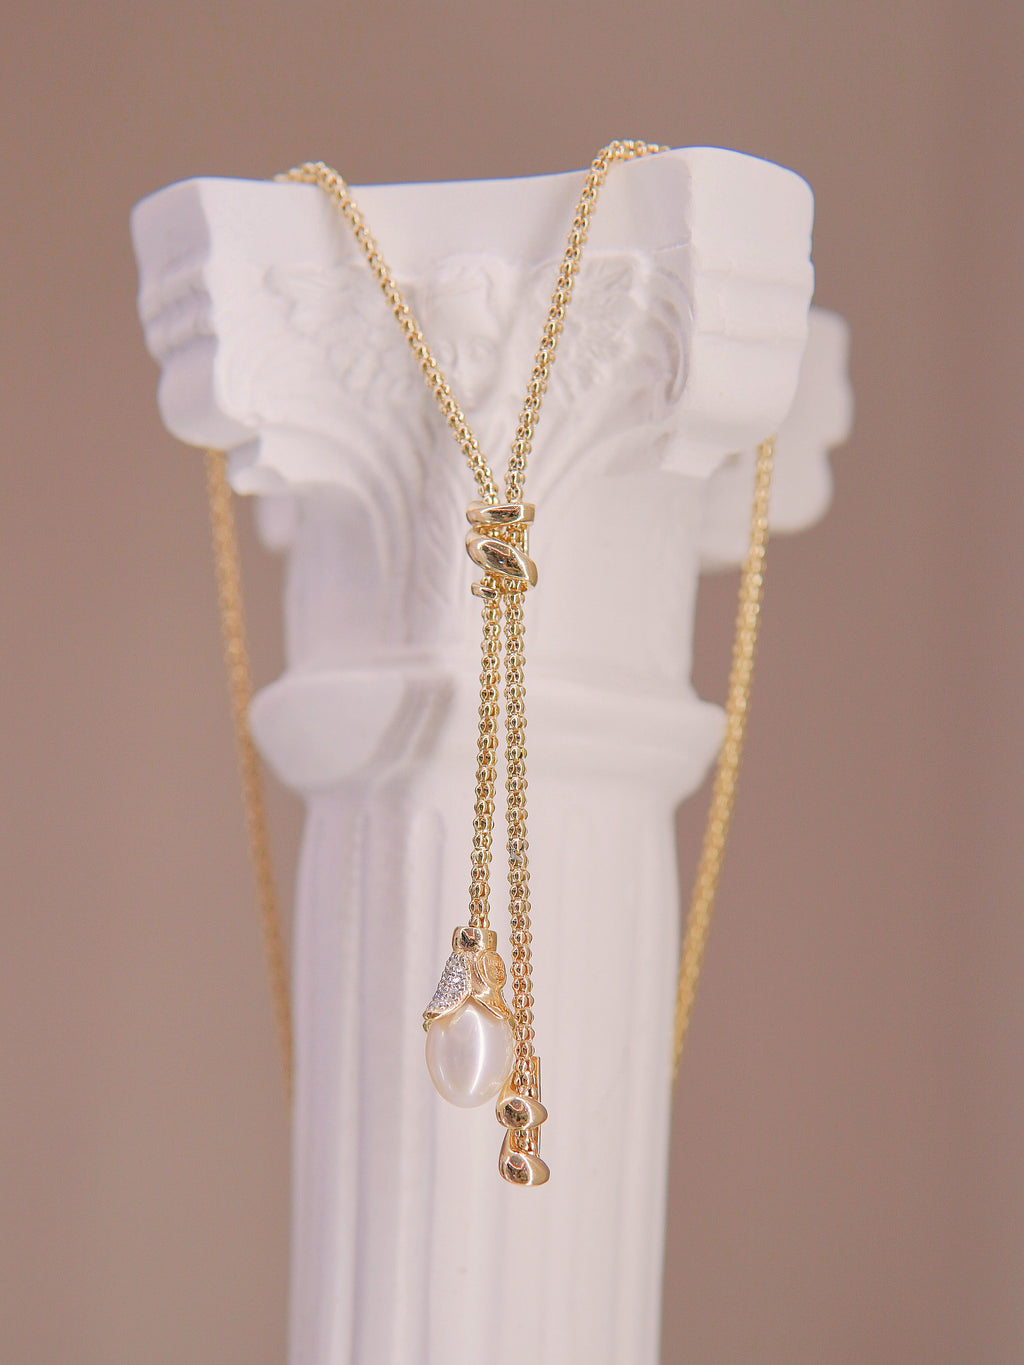 LAFIT · Royal Elegance - Necklace 意大利高貴璀璨頸鏈